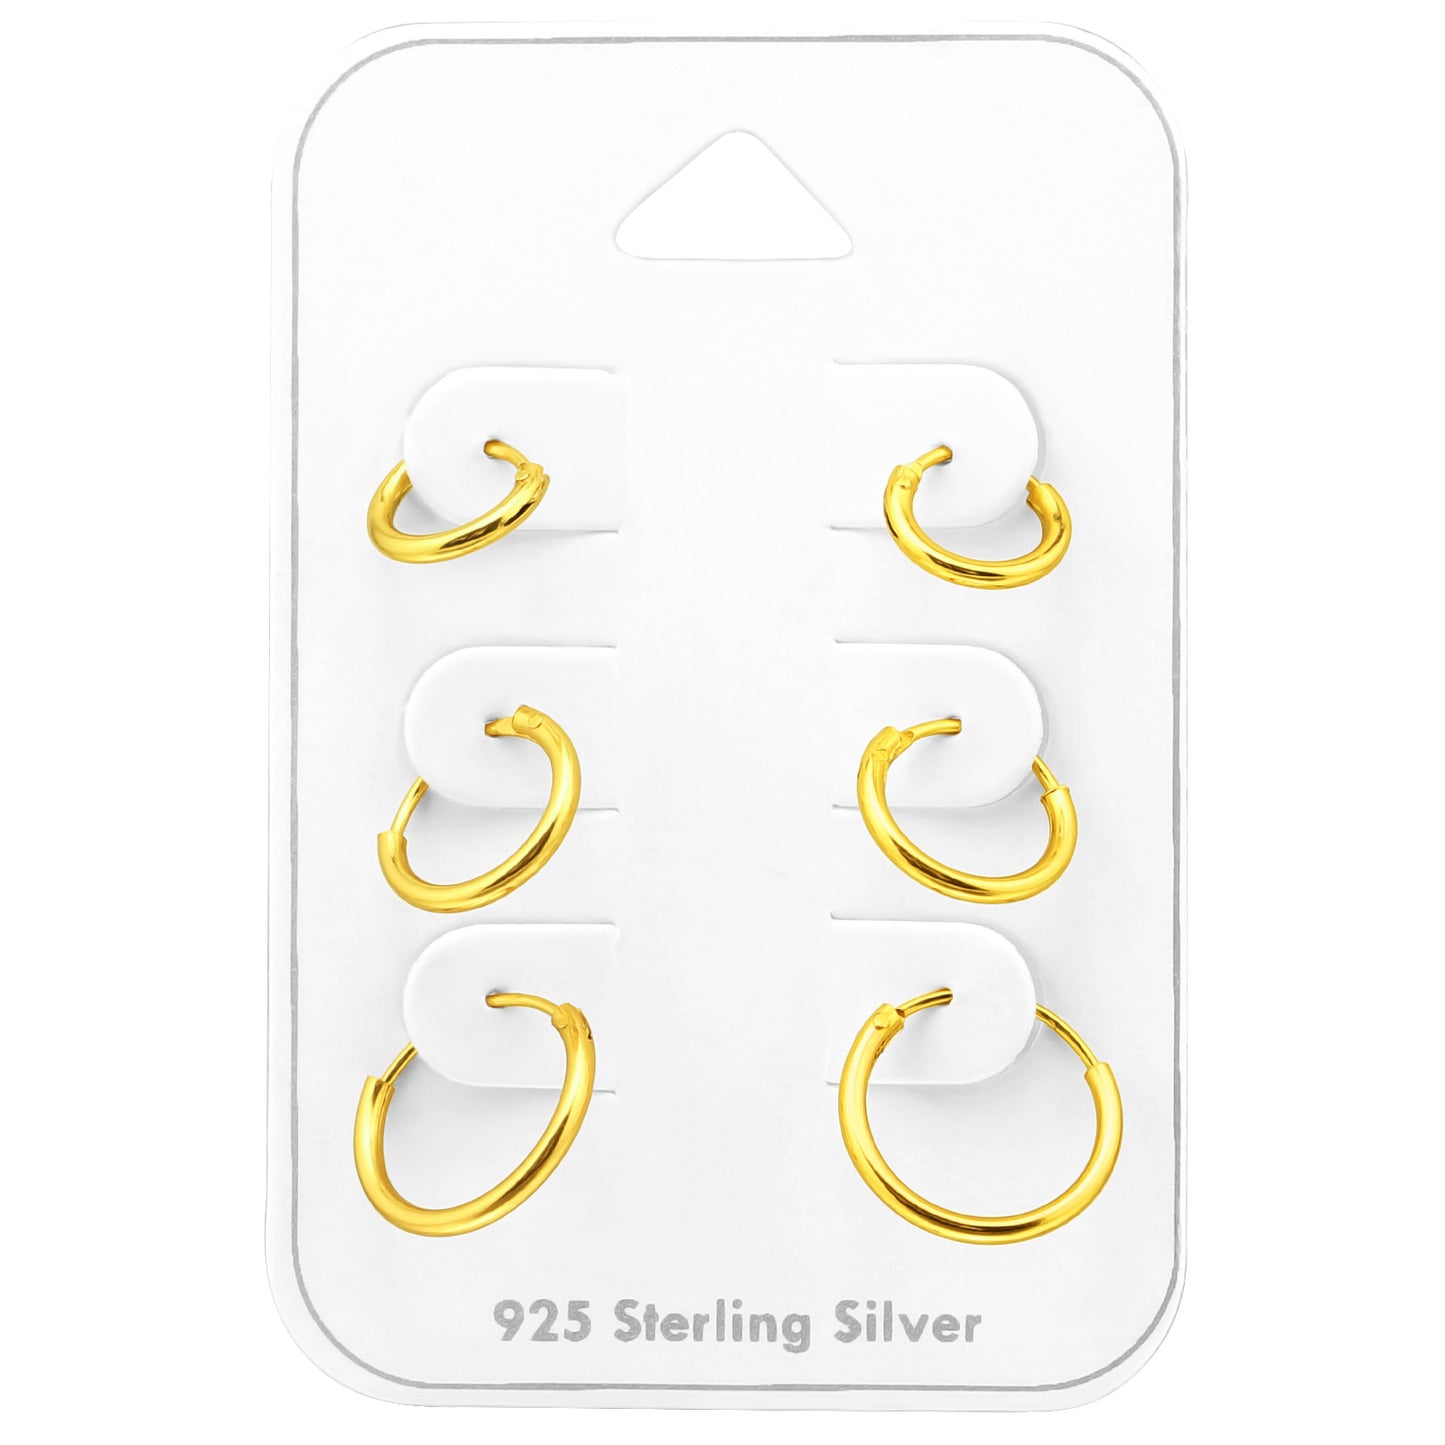 14k Gold Plated Sleeper Huggie Hoops: Set of 3 Sterling Silver Earrings